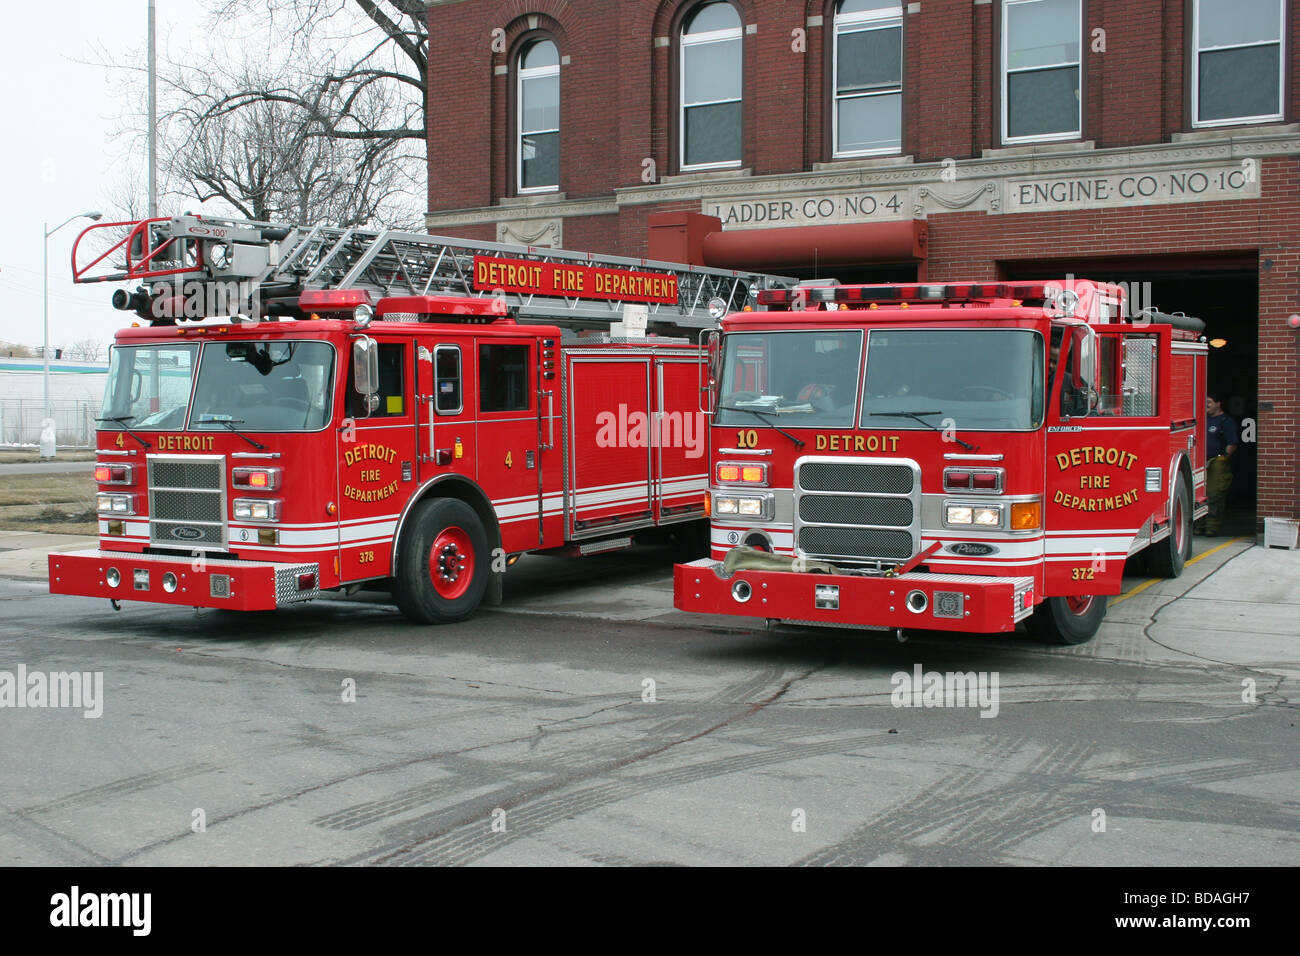 Scaletta Co 4 motore Co10 Detroit Fire Department Detroit mi usa queste aziende antincendio sono state ormai sciolto in modo permanente Foto Stock